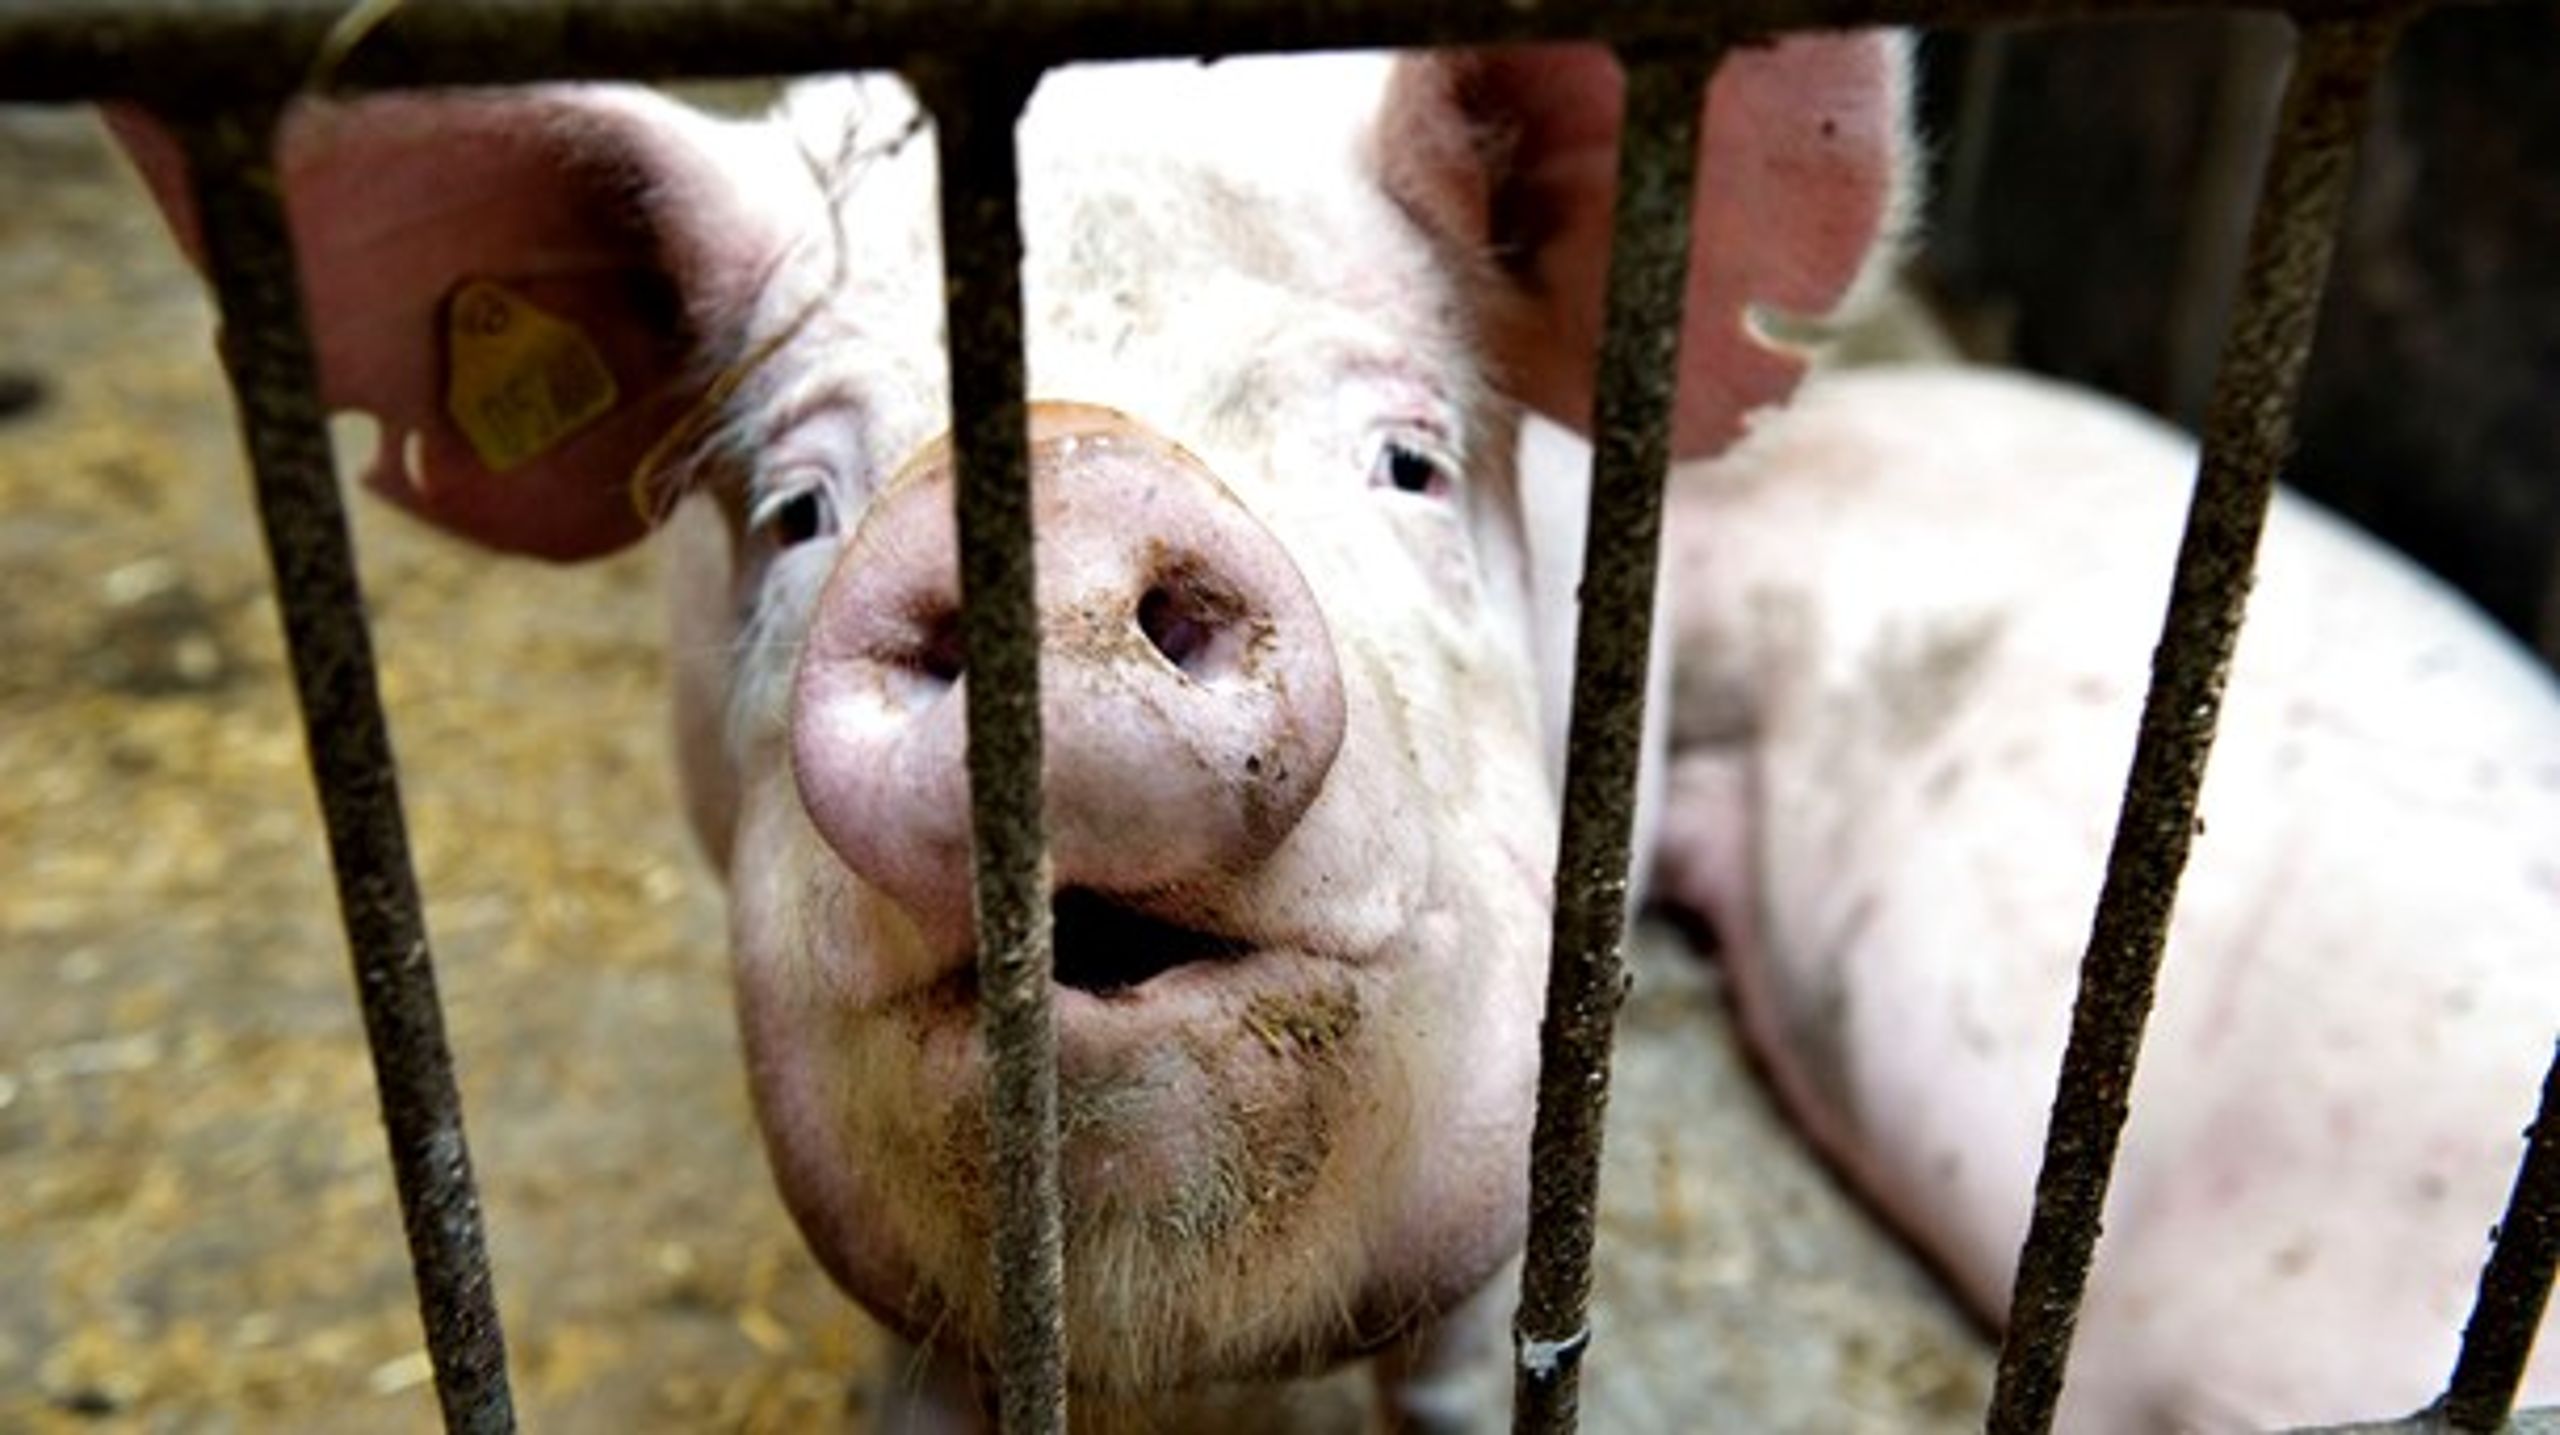 Danmark har siden 2014 haft et krav om, at en dyrlæge ved flokbehandling af grise skal tage en række prøver for at stille en diagnose. Nu får europæiske landmænd lignende krav.